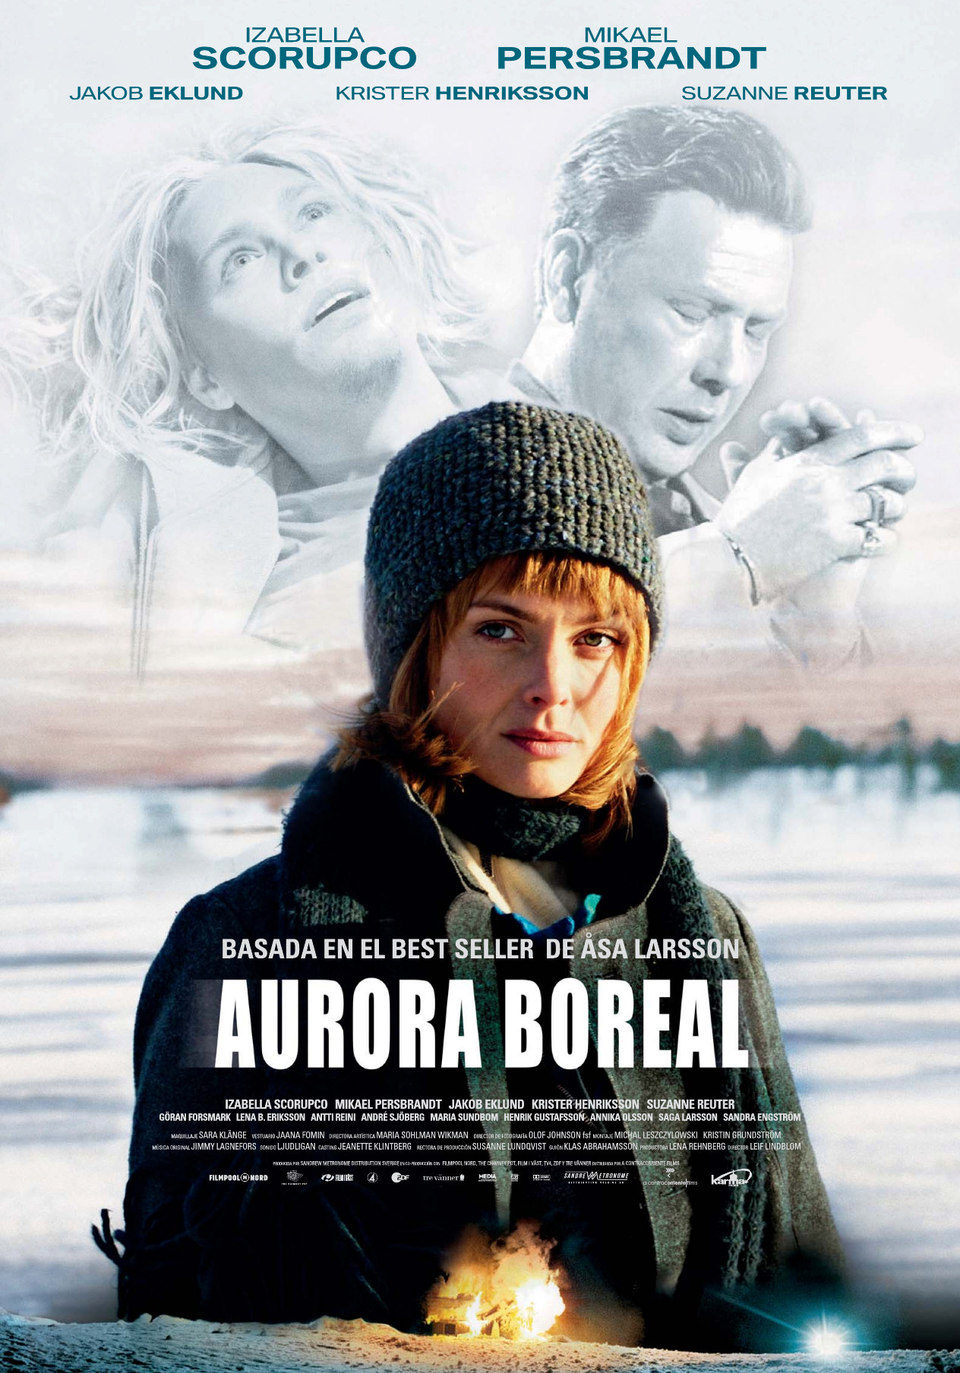 Cartel de Aurora boreal - España